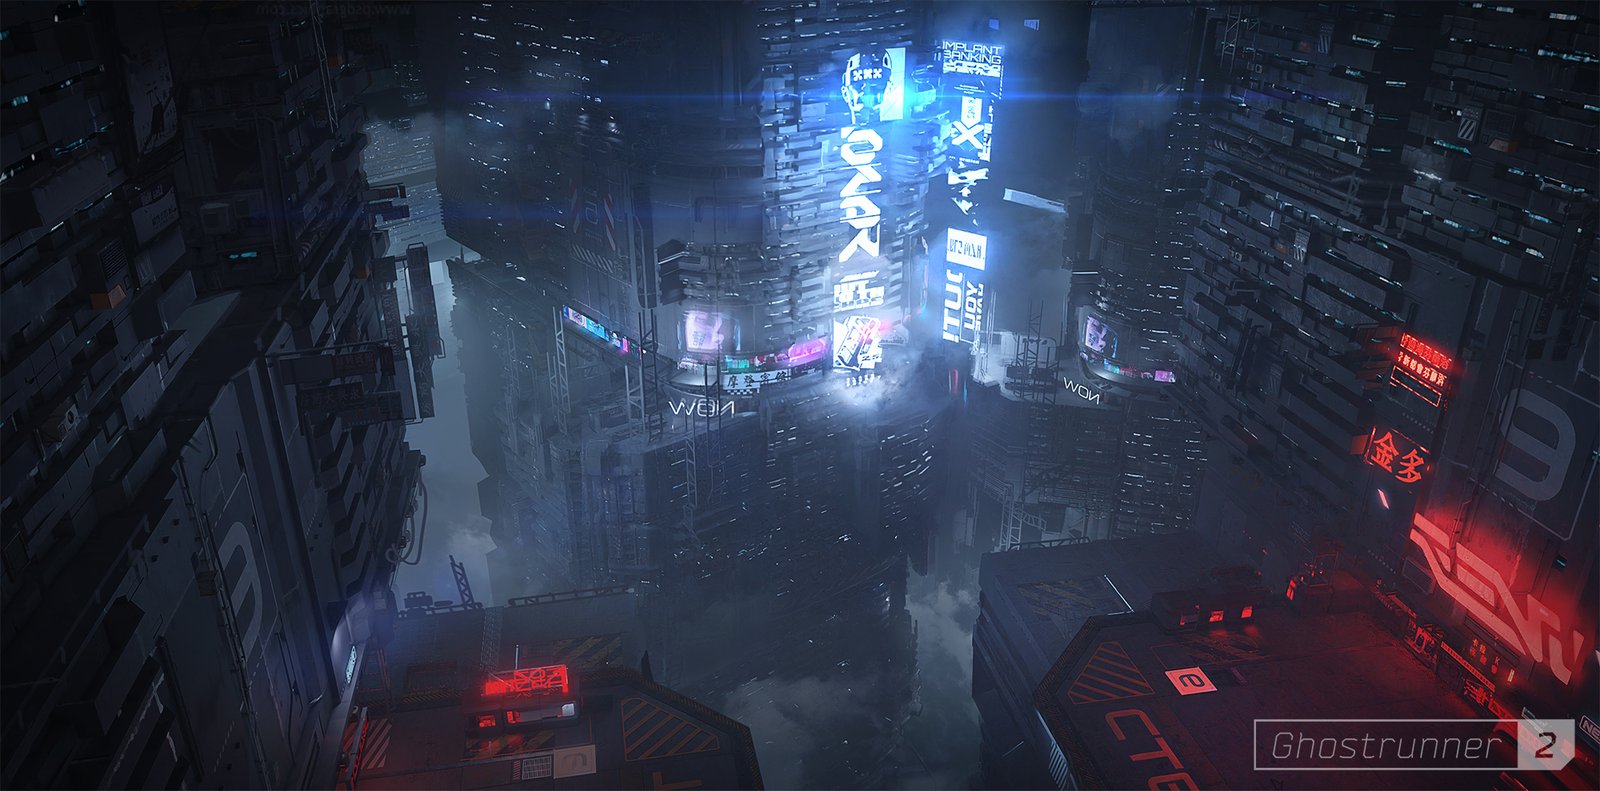 Ghostrunner 2 concept art of a cyberpunk cityscape